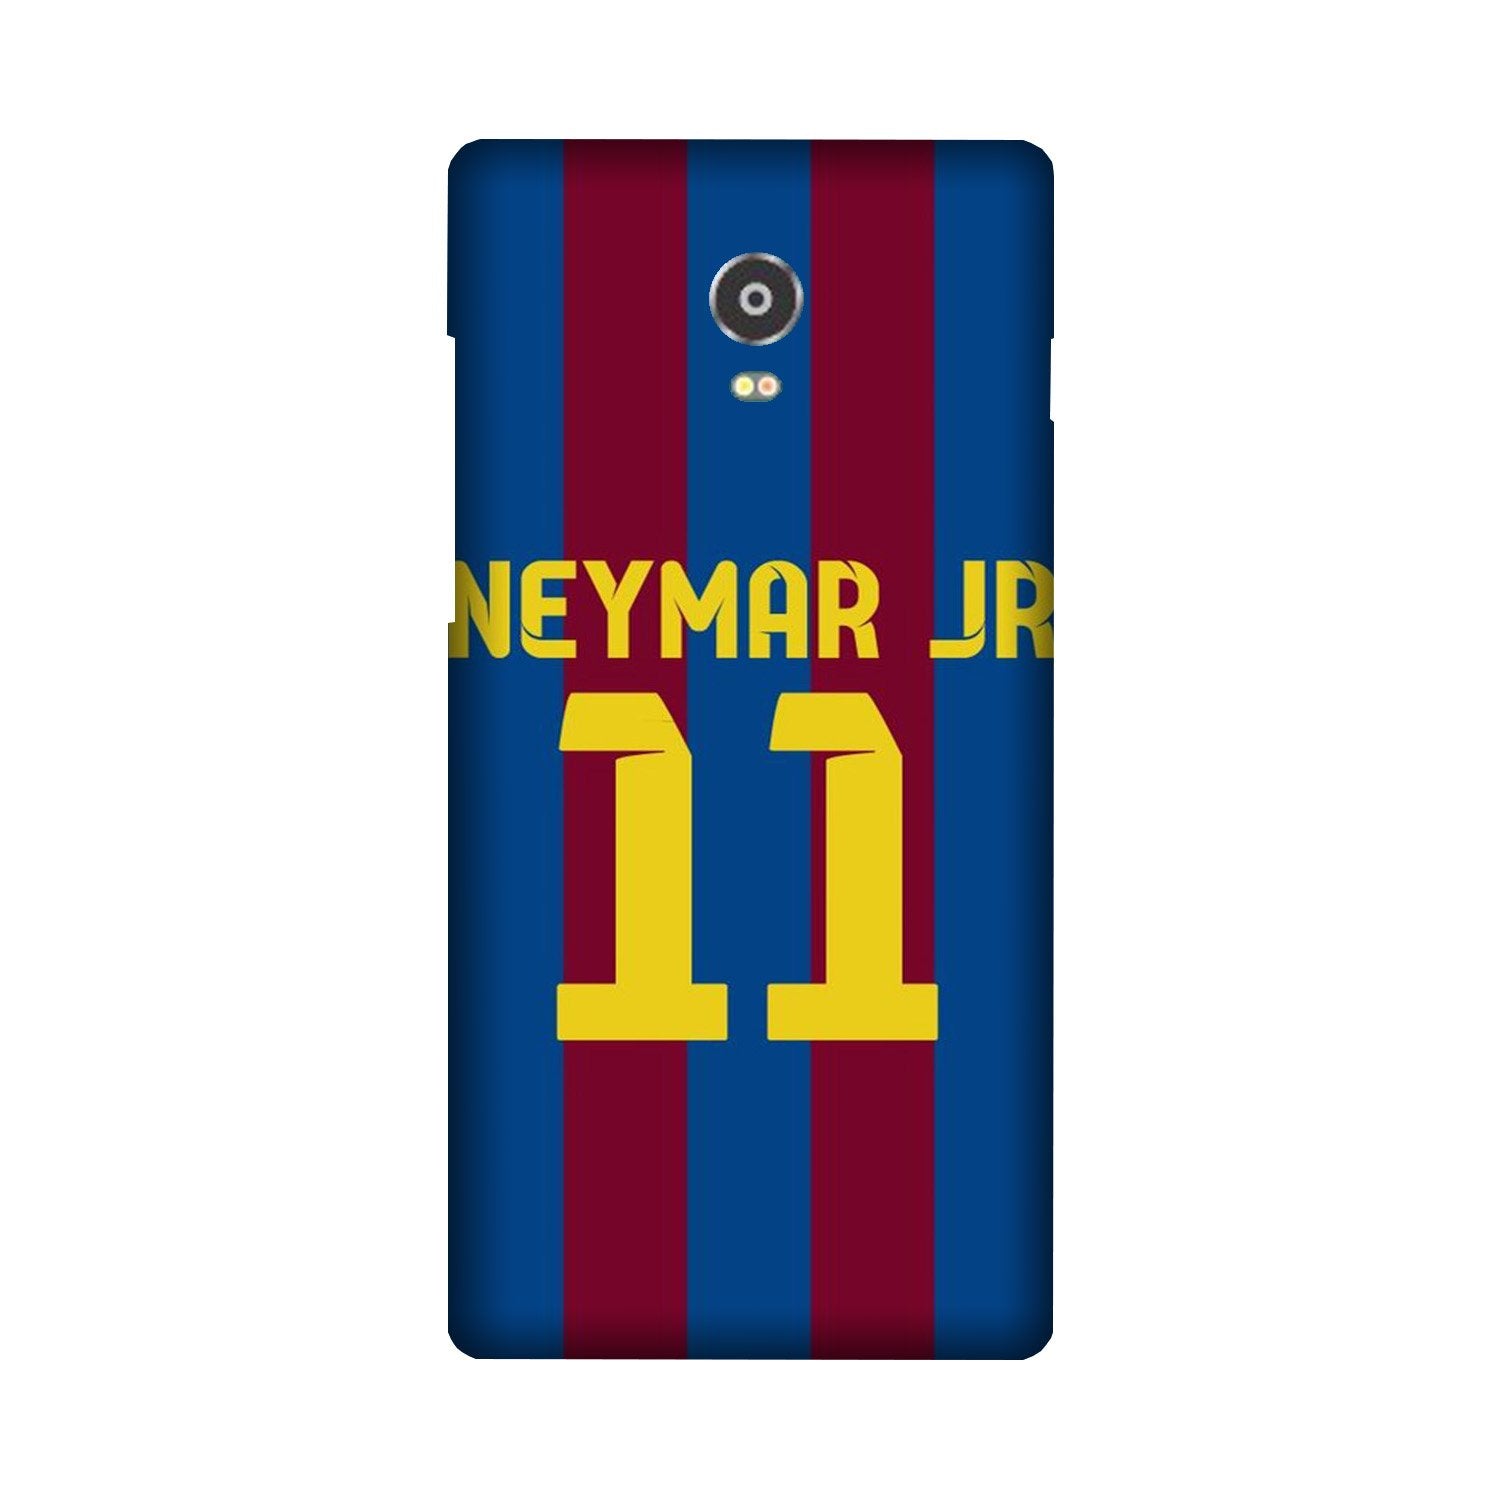 Neymar Jr Case for Lenovo Vibe P1  (Design - 162)